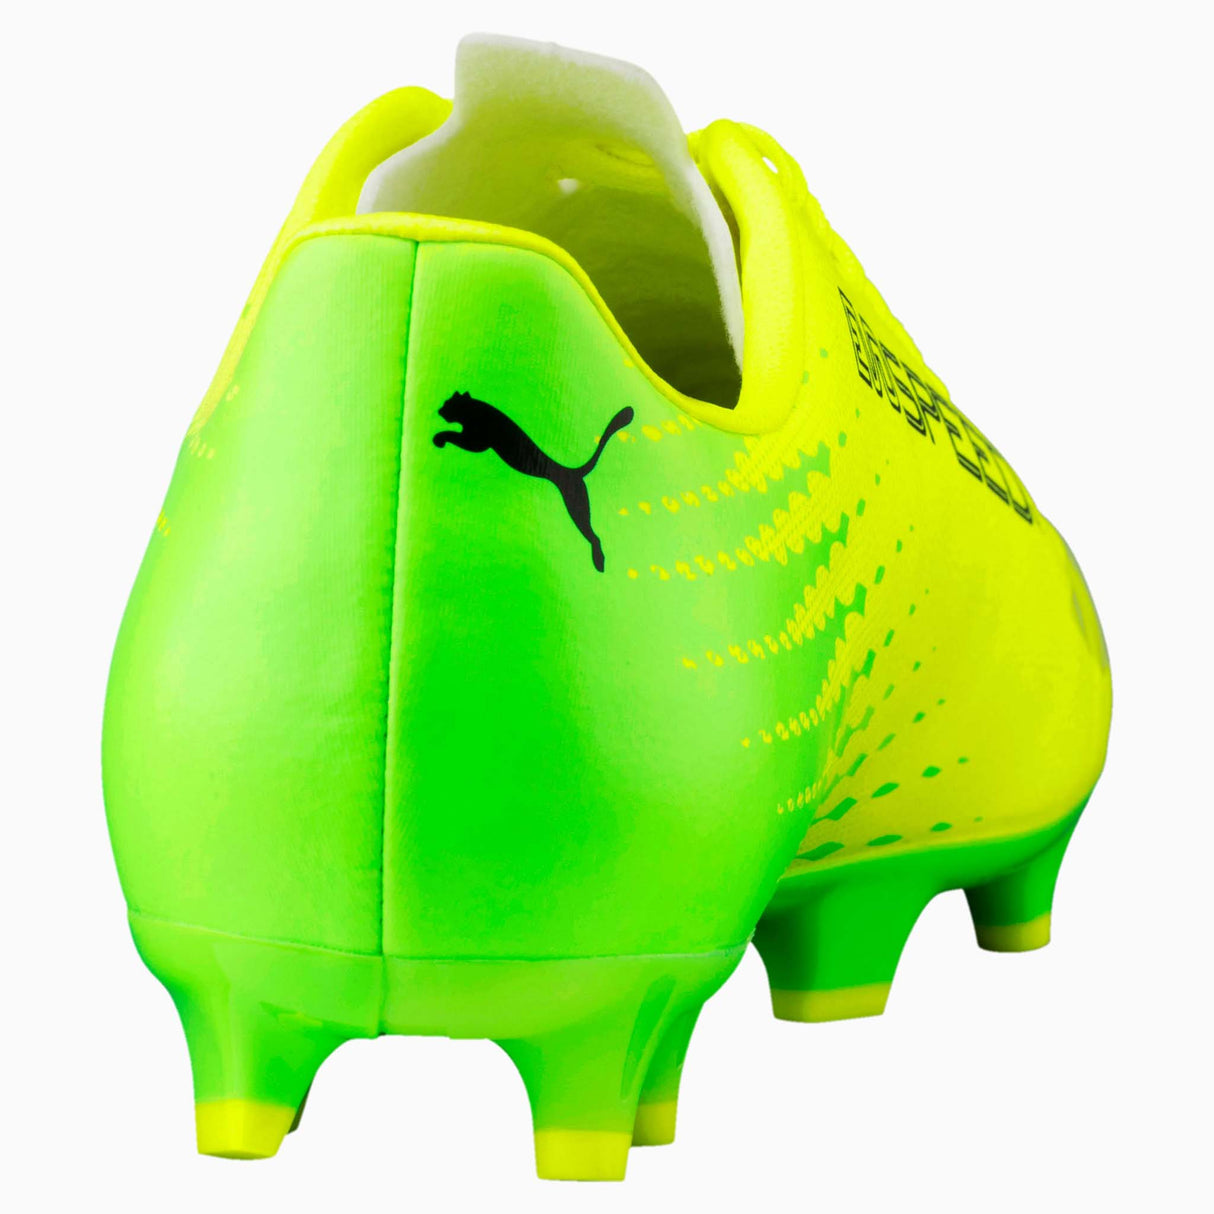 Puma evoSpeed 17.4 FG chaussures de soccer